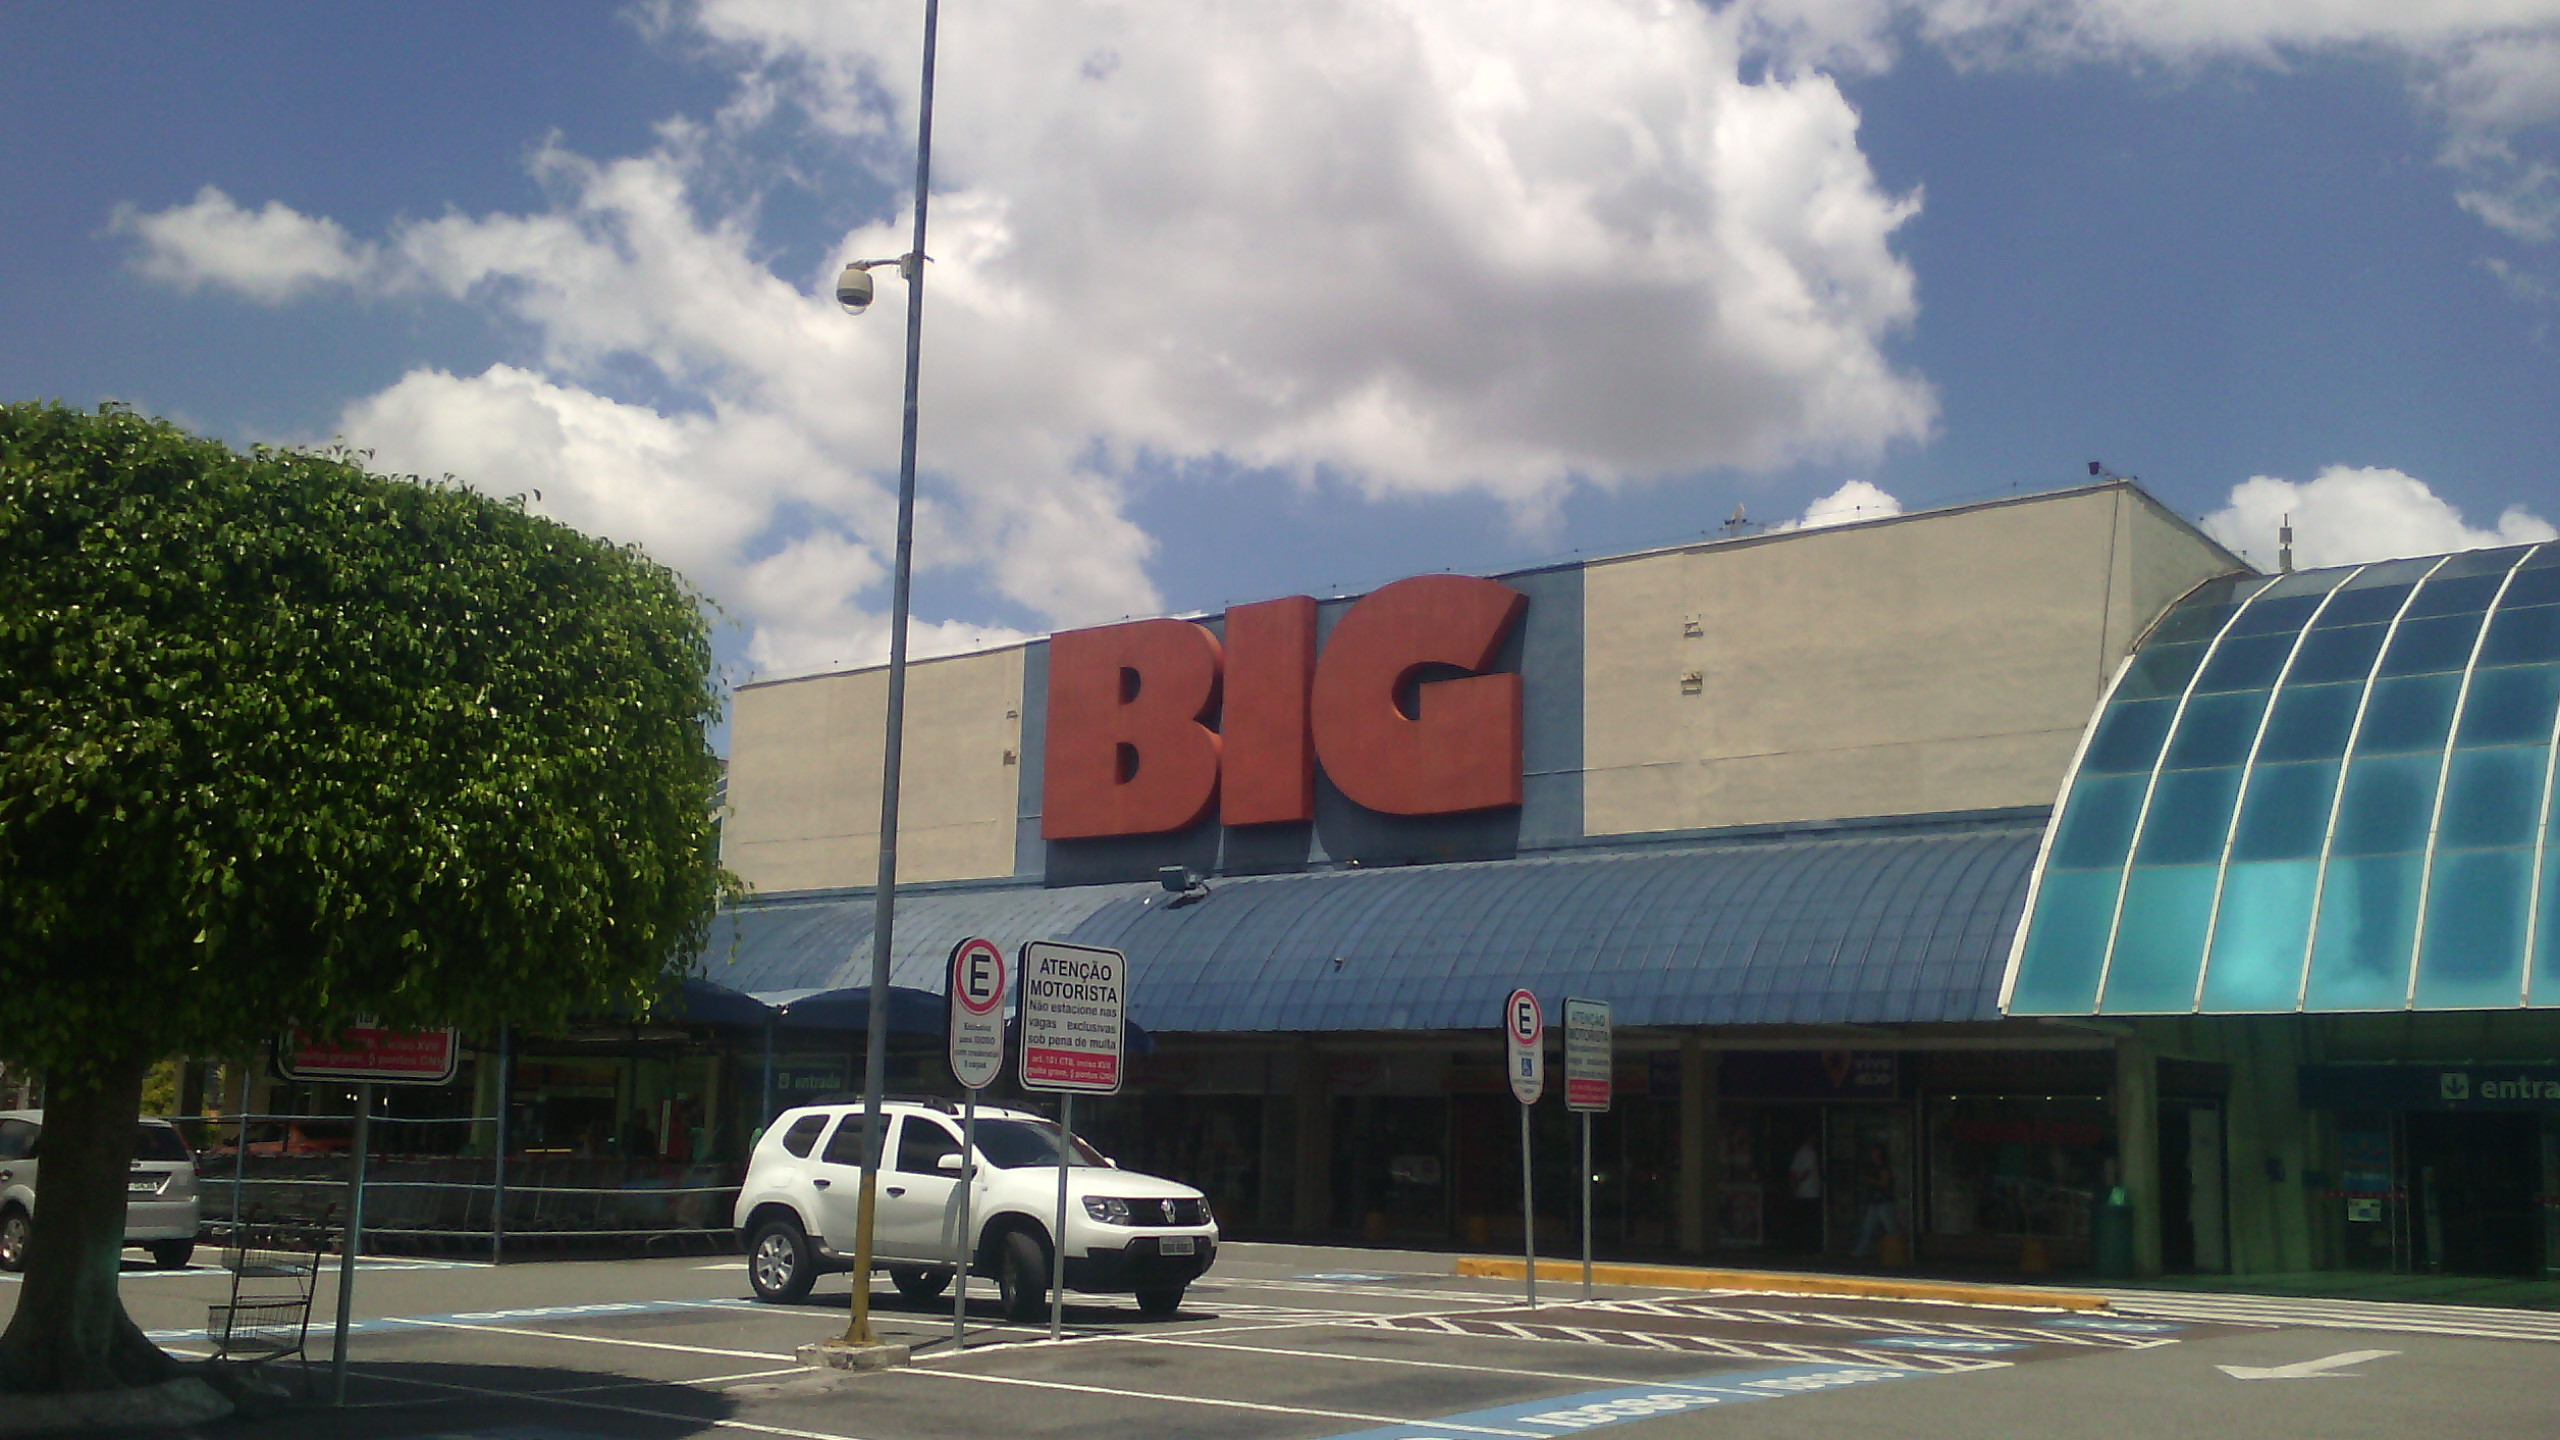 Walmart sairá do Brasil e Grupo Big assume as operações